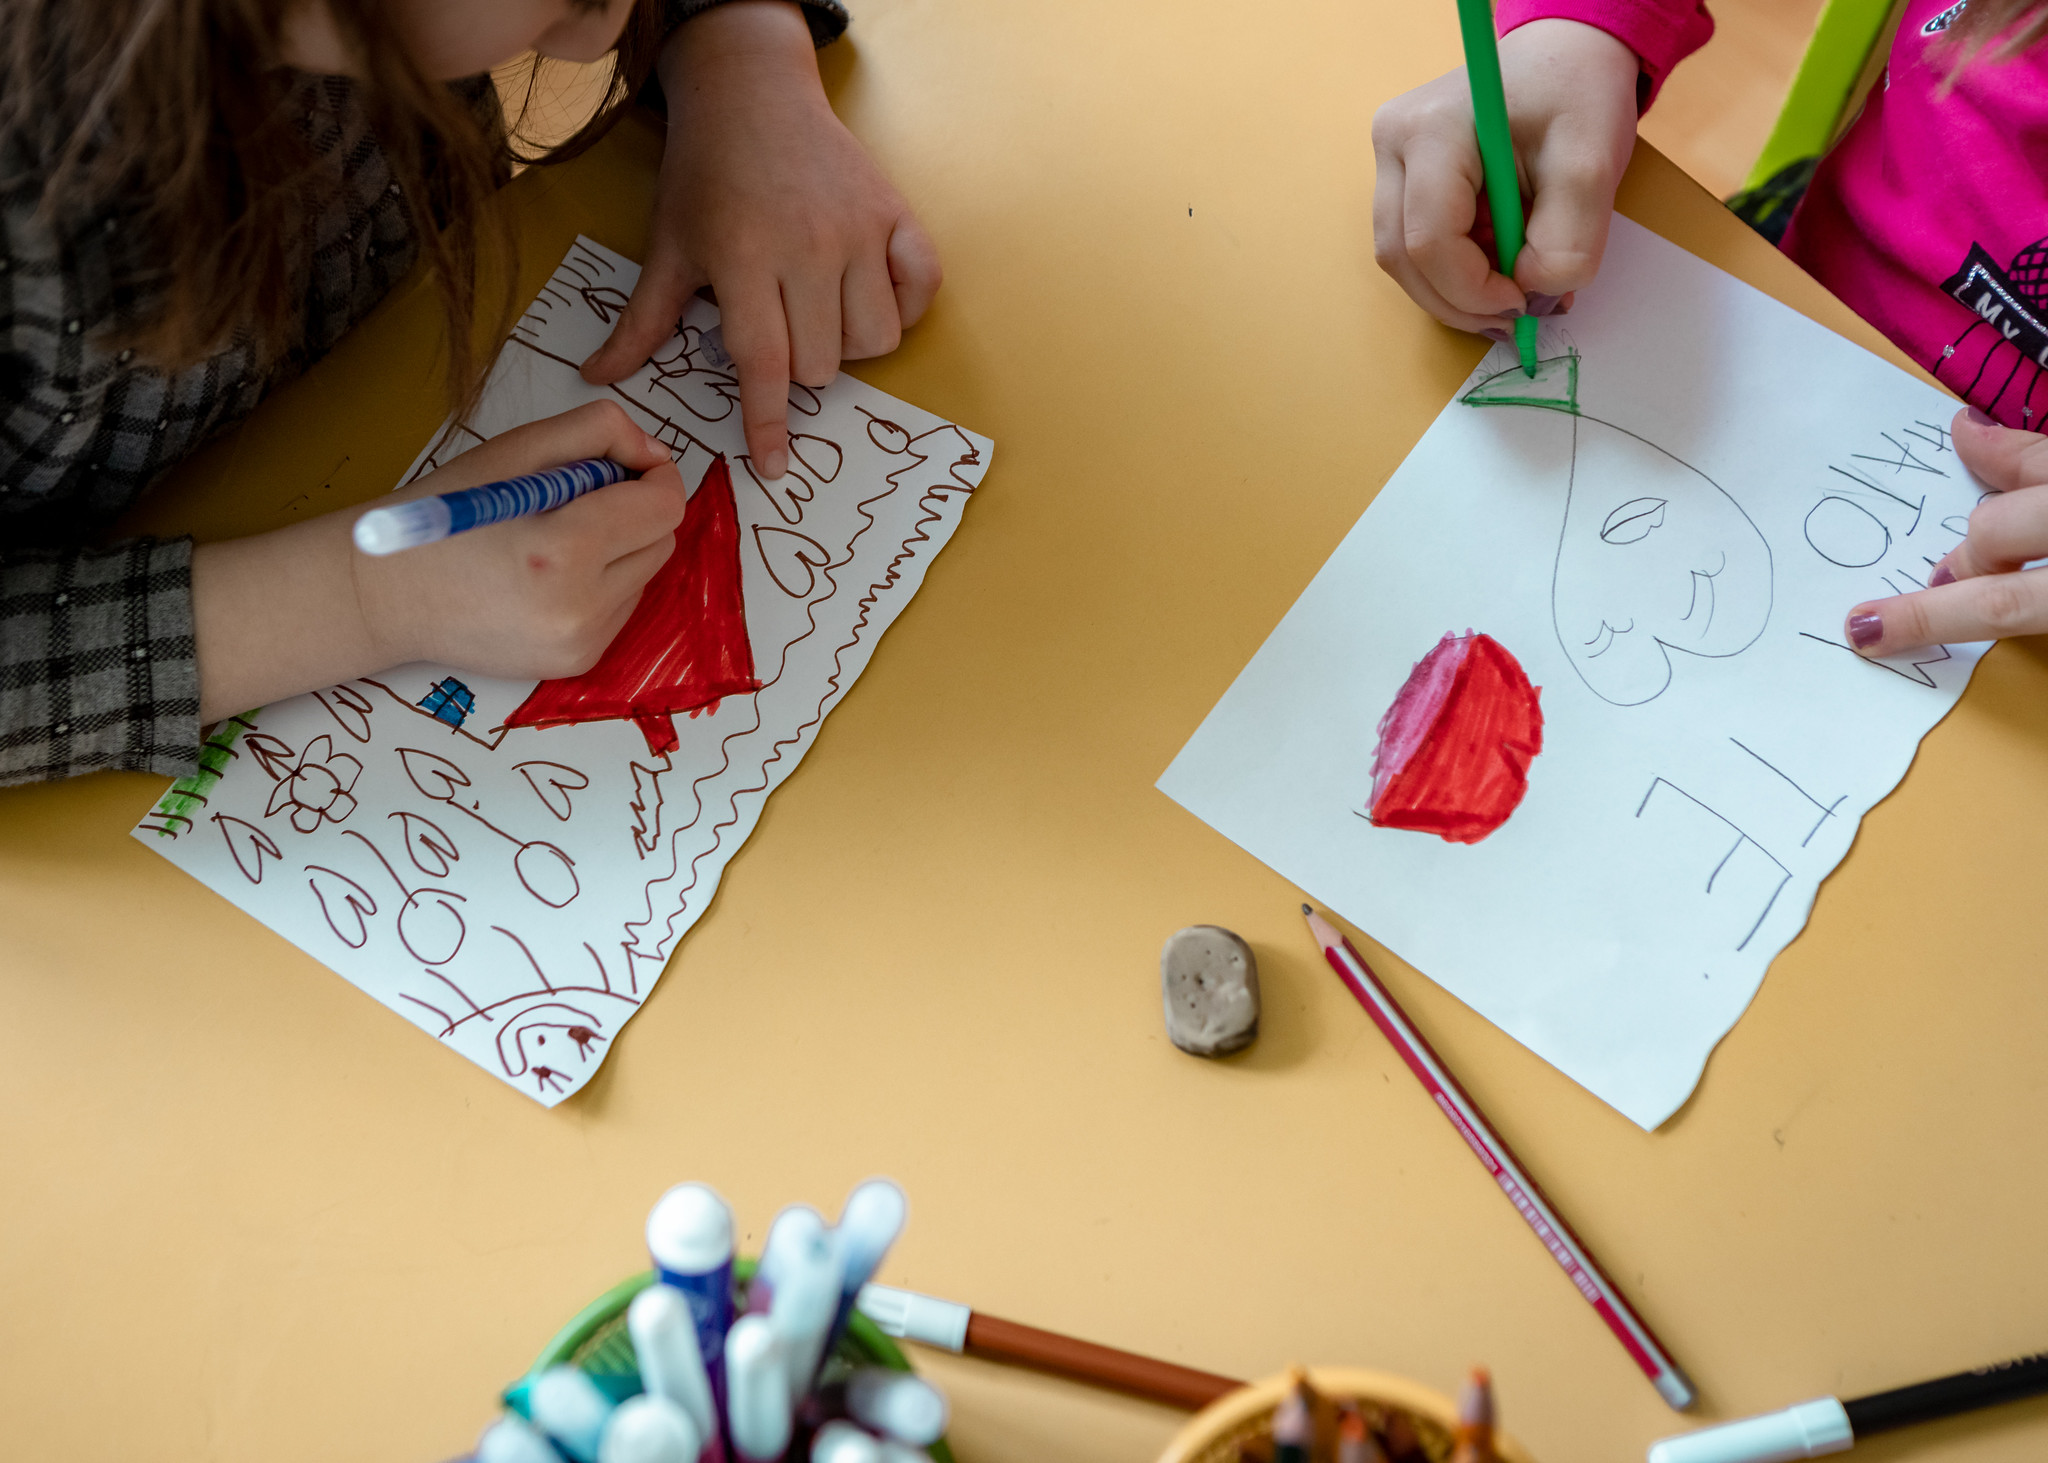 Vì nghệ thuật rất thú vị và hấp dẫn và dễ bị lạc lõng trong quá trình này; nên việc dạy vẽ cơ bản cho trẻ em sẽ kéo dài khả năng tập trung vô cùng hiệu quả